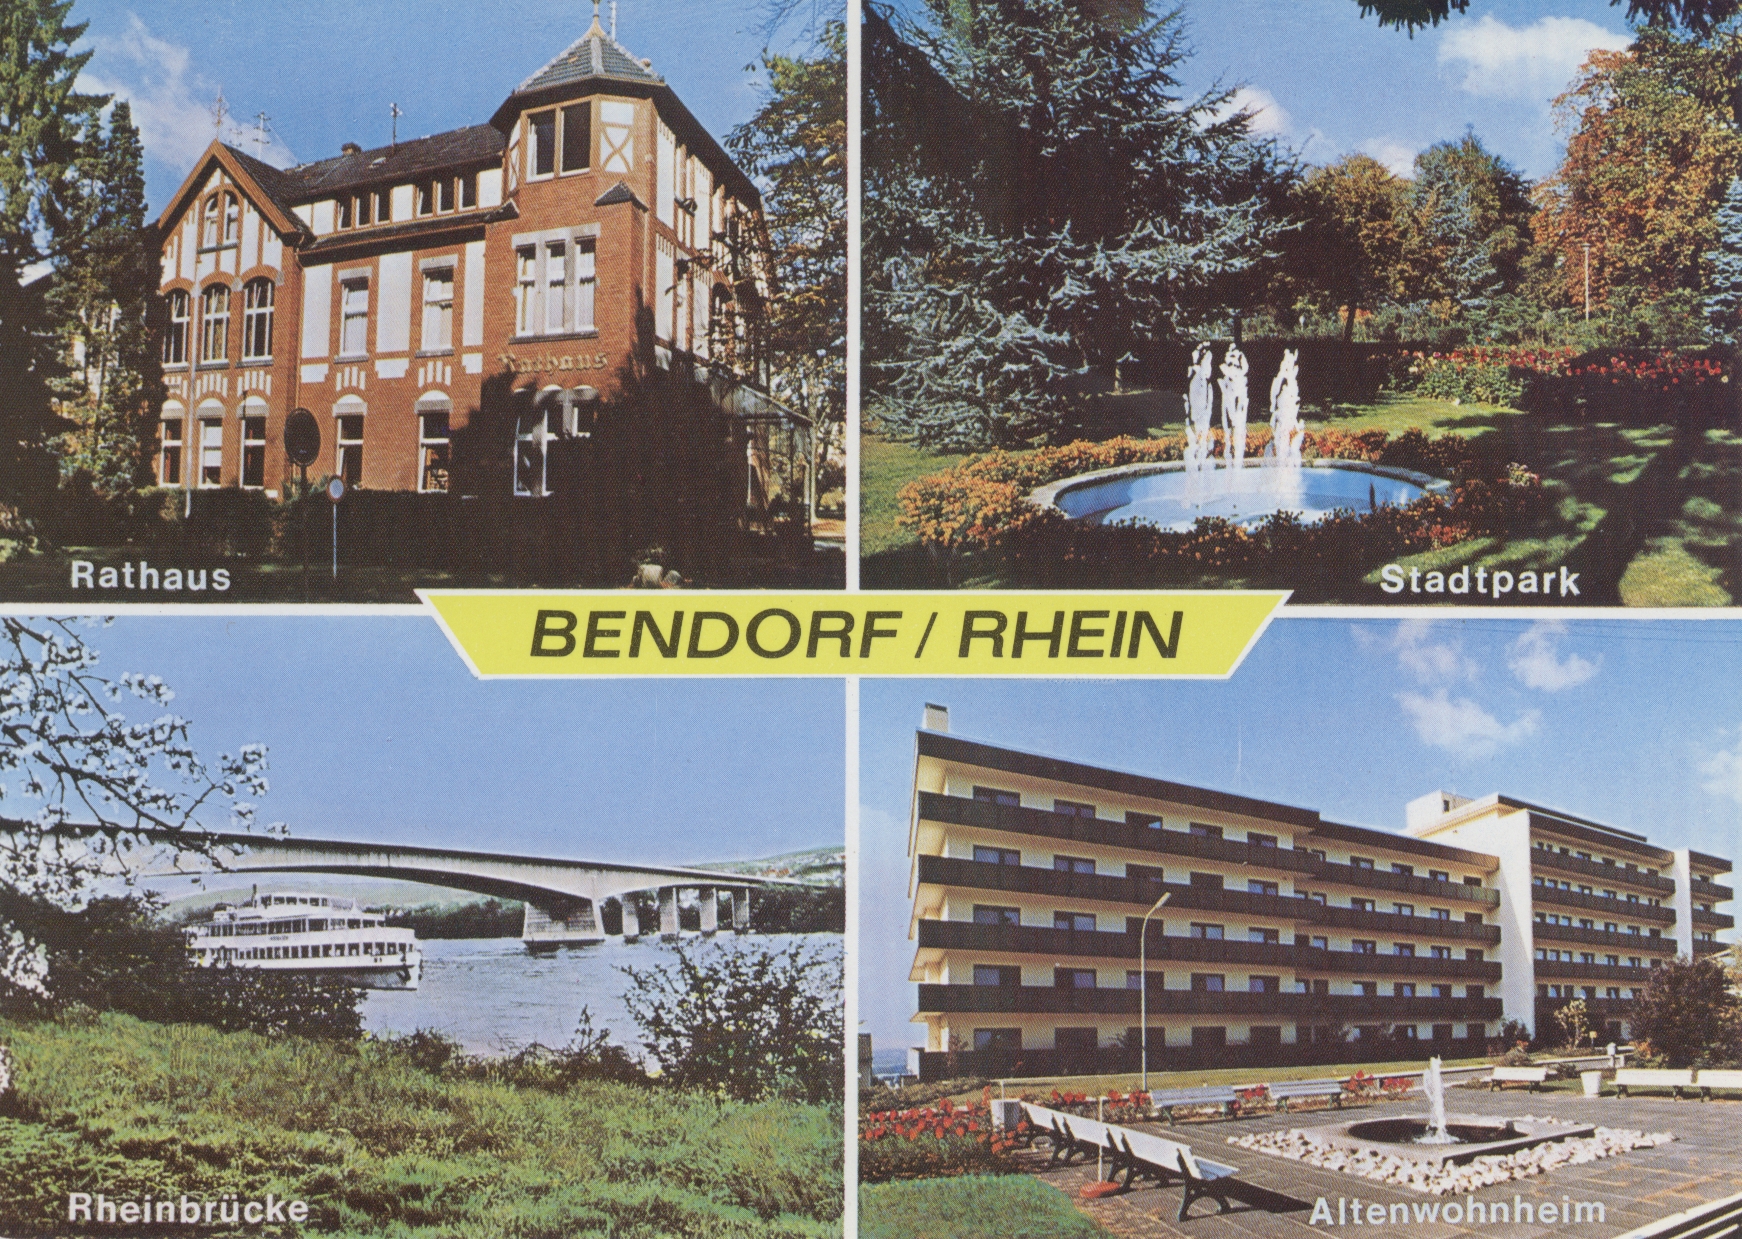 Ansichtskarte der Stadt Bendorf, 1979 (REM CC BY-NC-SA)